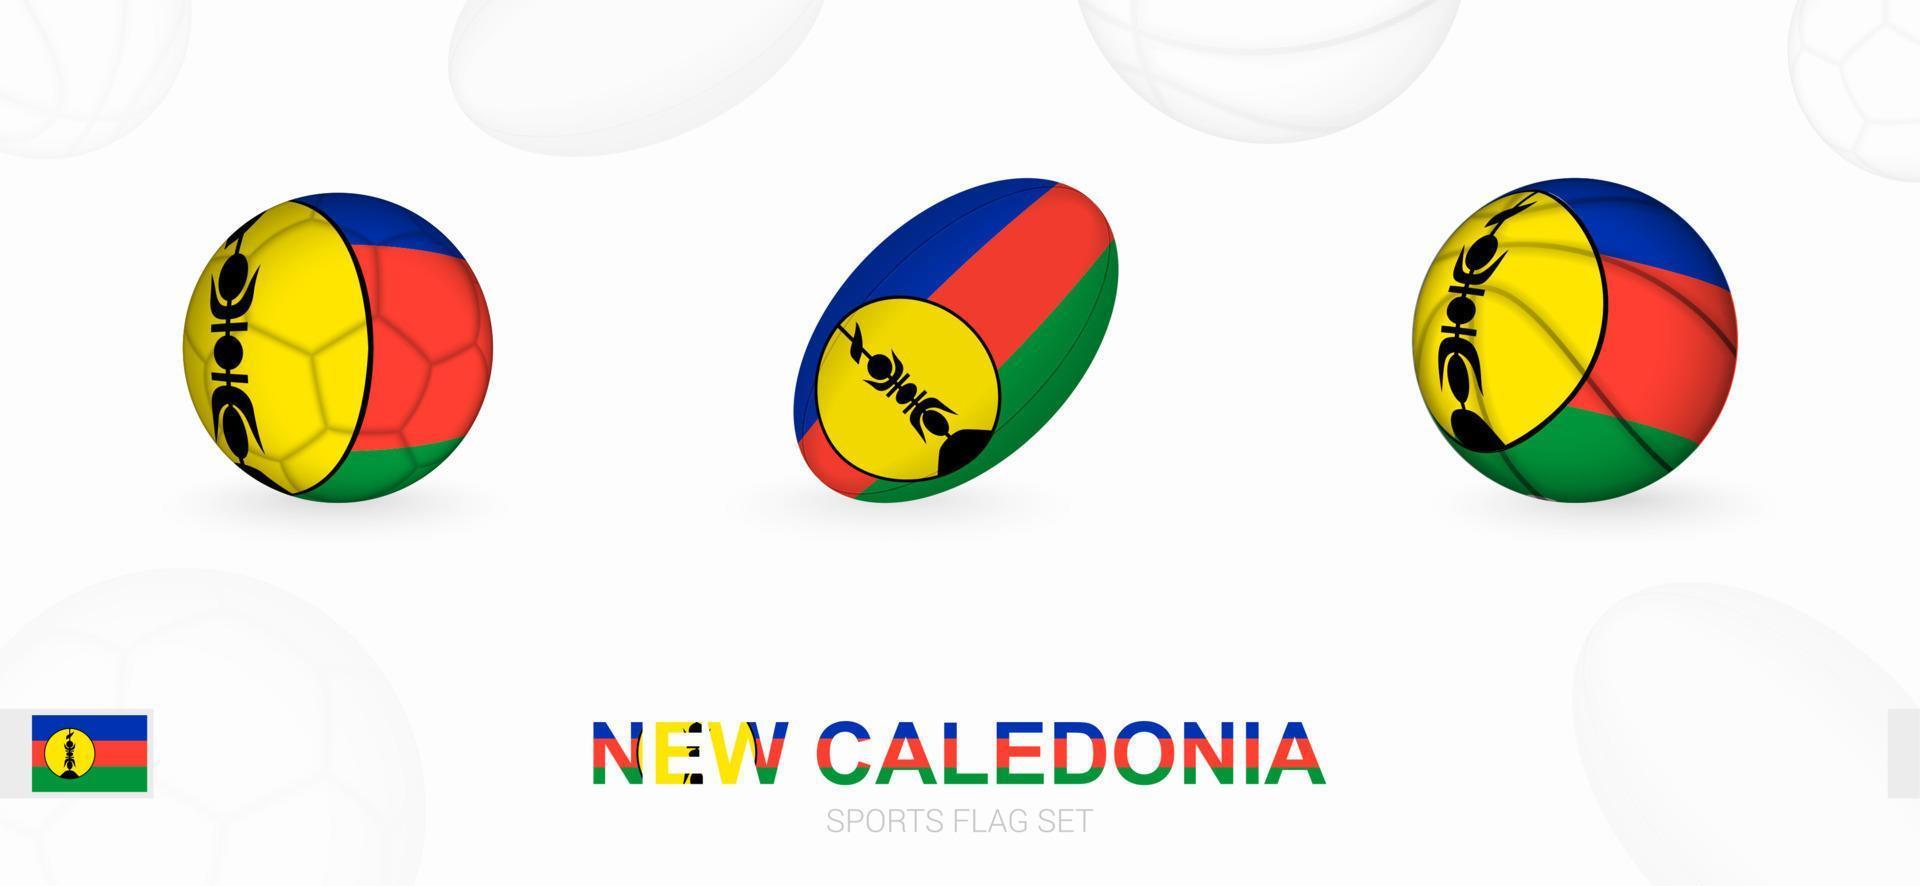 Deportes íconos para fútbol, rugby y baloncesto con el bandera de nuevo Caledonia. vector